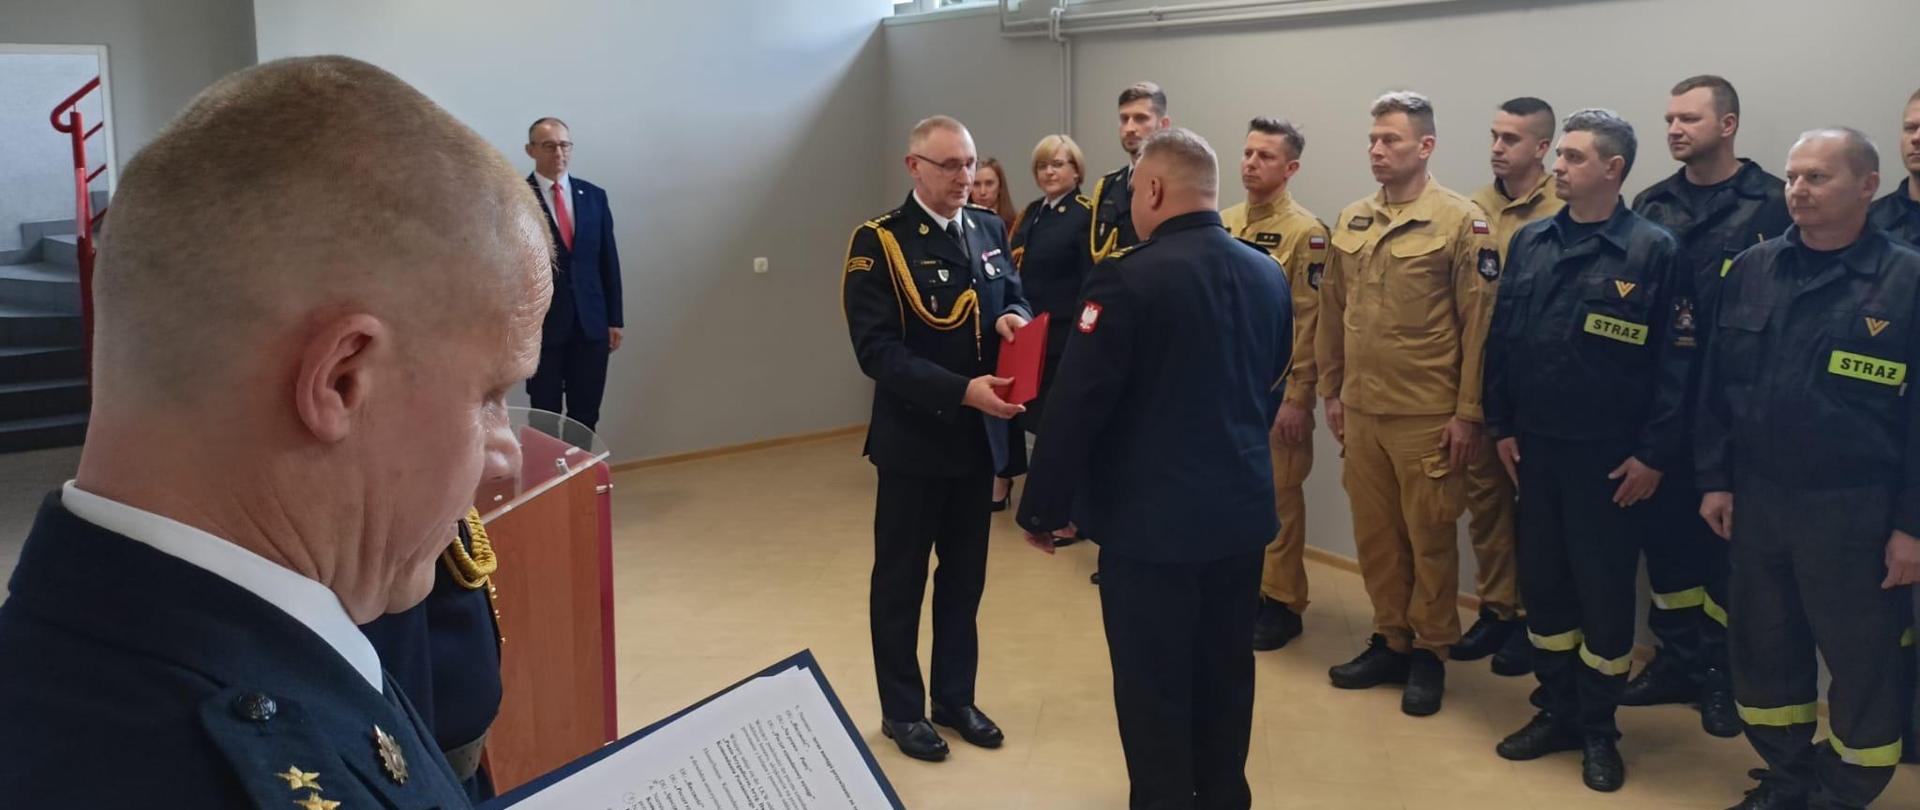 Na fotografii Lubuski Komendant Wojewódzki wręcza akt powołania komendanta powiatowego.